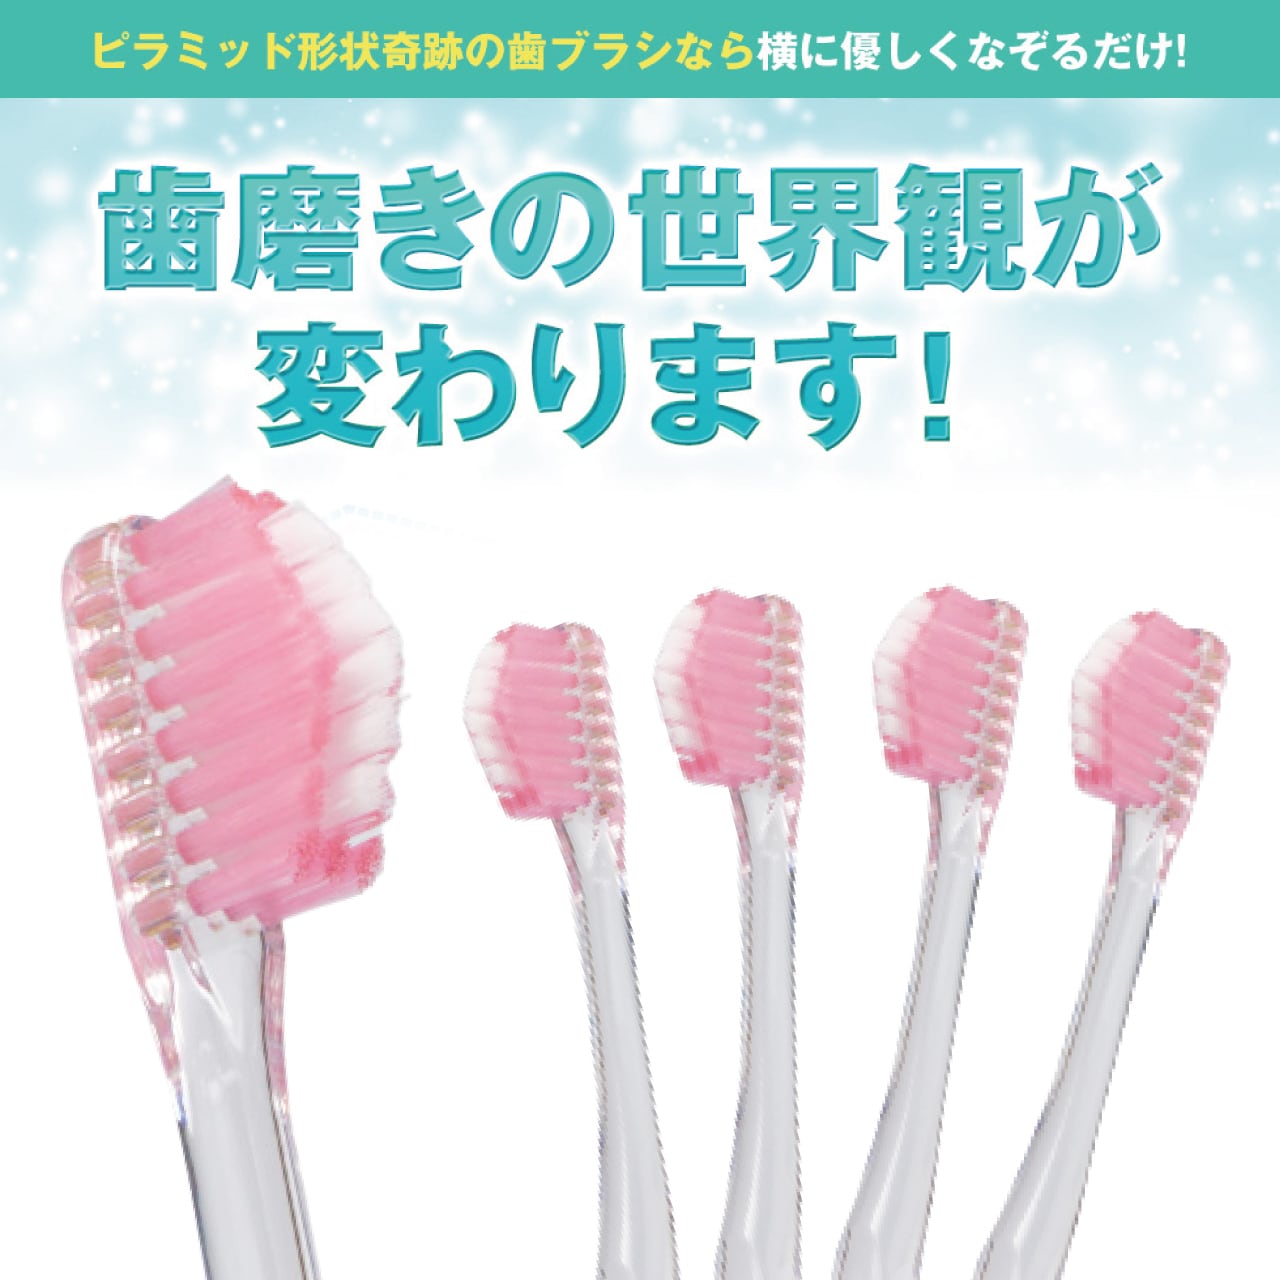 奇跡の歯ブラシ(ミュゼホワイトニング限定モデル) 5本【ピンク×ホワイト】 museewhitening